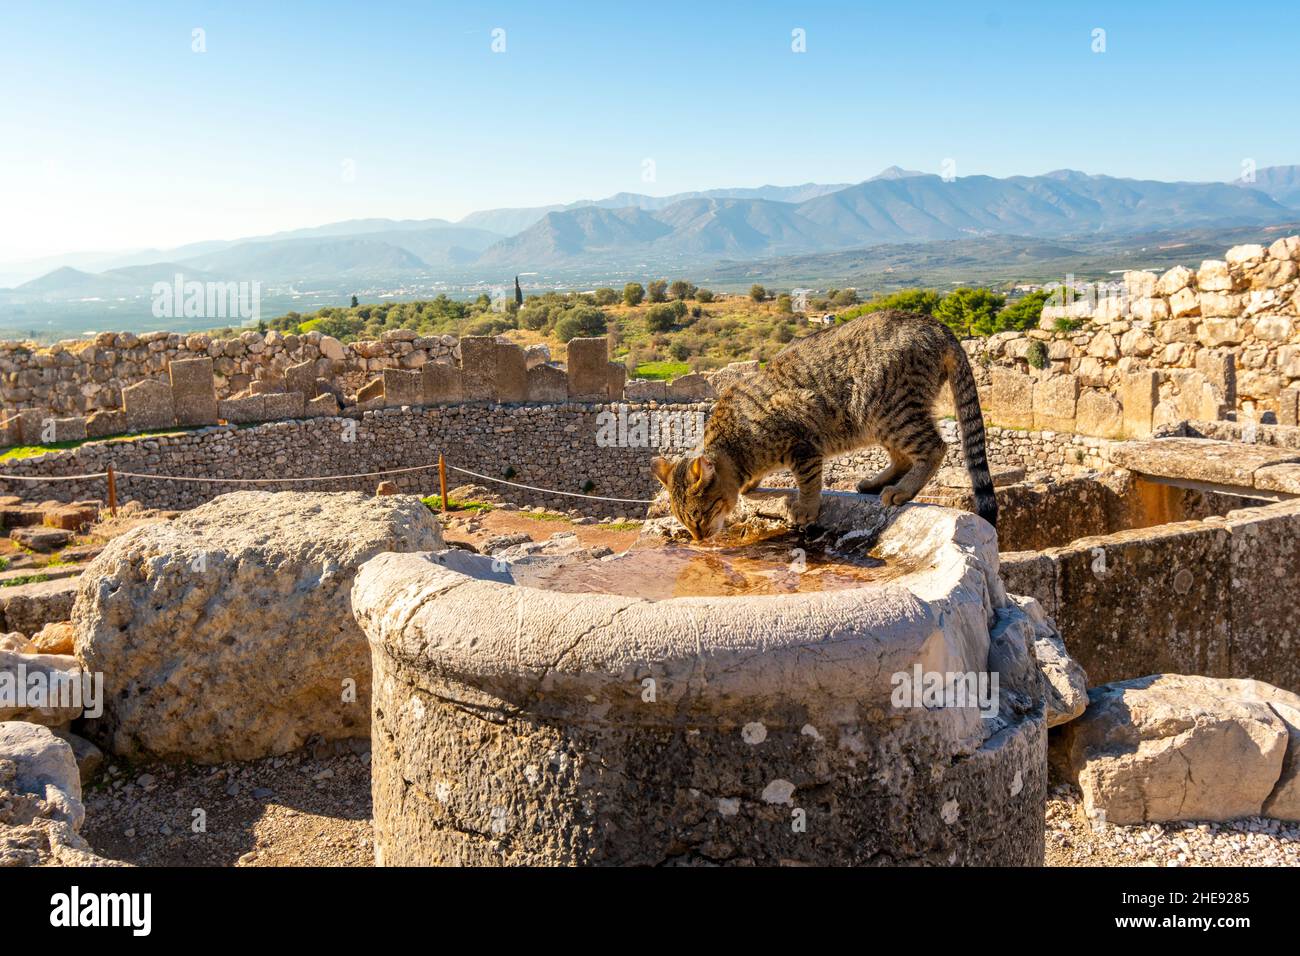 Un chat de tabby grec errant boit de l'eau provenant d'une ruine ancienne dans la forteresse de Mycenae, en Grèce. Banque D'Images